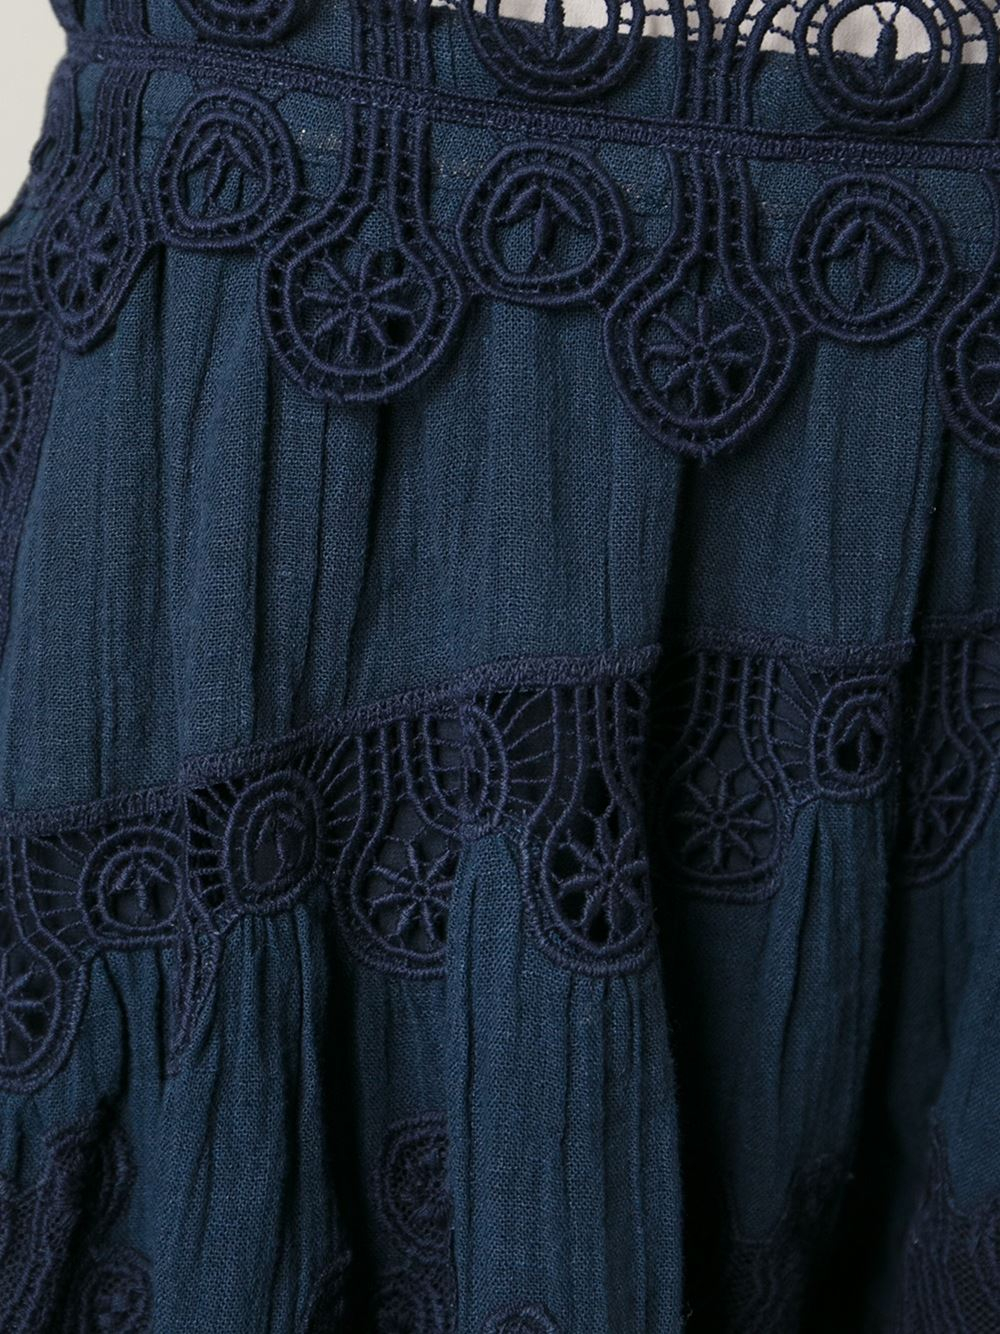 chloe imitation - Chlo Washed Drawstring Denim Skirt in Blue | Lyst